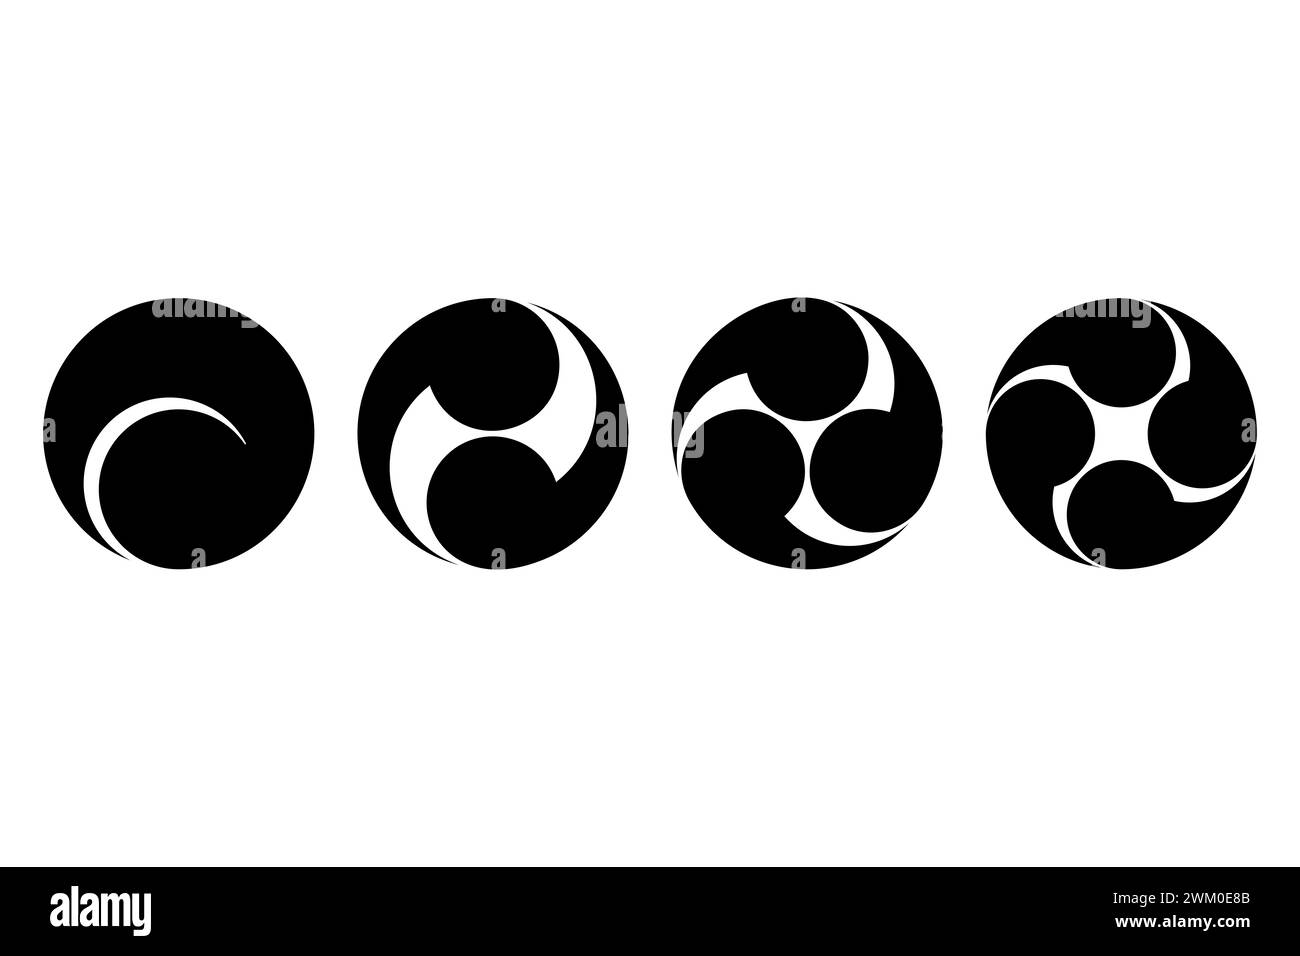 Japanische tomoe-Symbole, von links nach links vierfach. Vier Wirbel Kommas oder Kaulquetschen, umschrieben in einem Kreis. Häufig für Embleme usw. verwendet Stockfoto